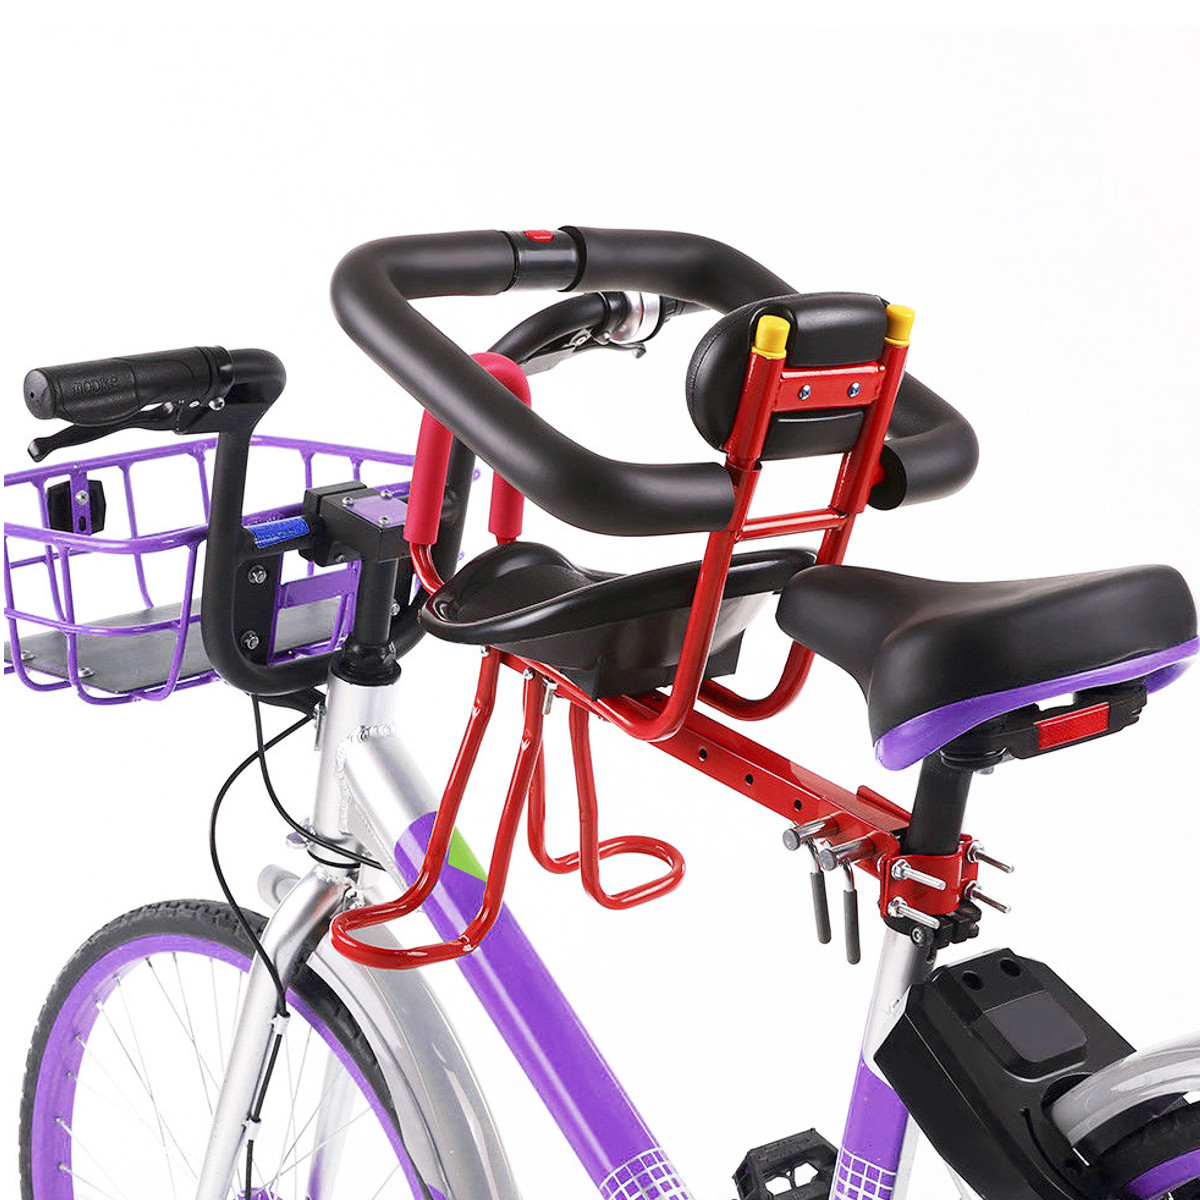 

BIKIGHT Велосипед Kids Rack Mount Seat Protection Safety Quick Release Замок Велоспорт Дети Передние кресла для седла Велосипедные аксессуары